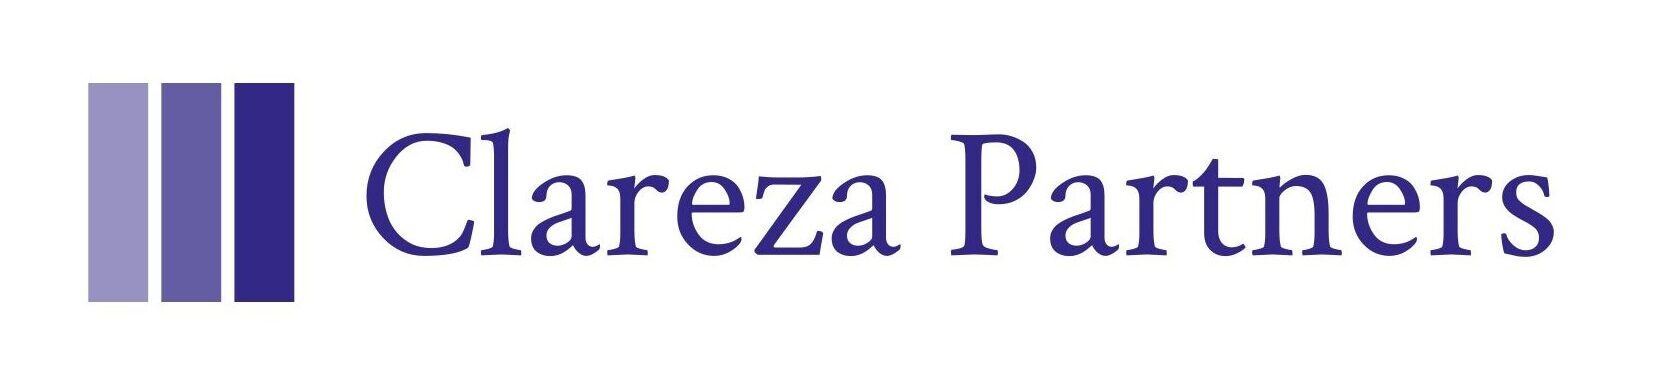 クラレザパートナーズ - Clareza Partners